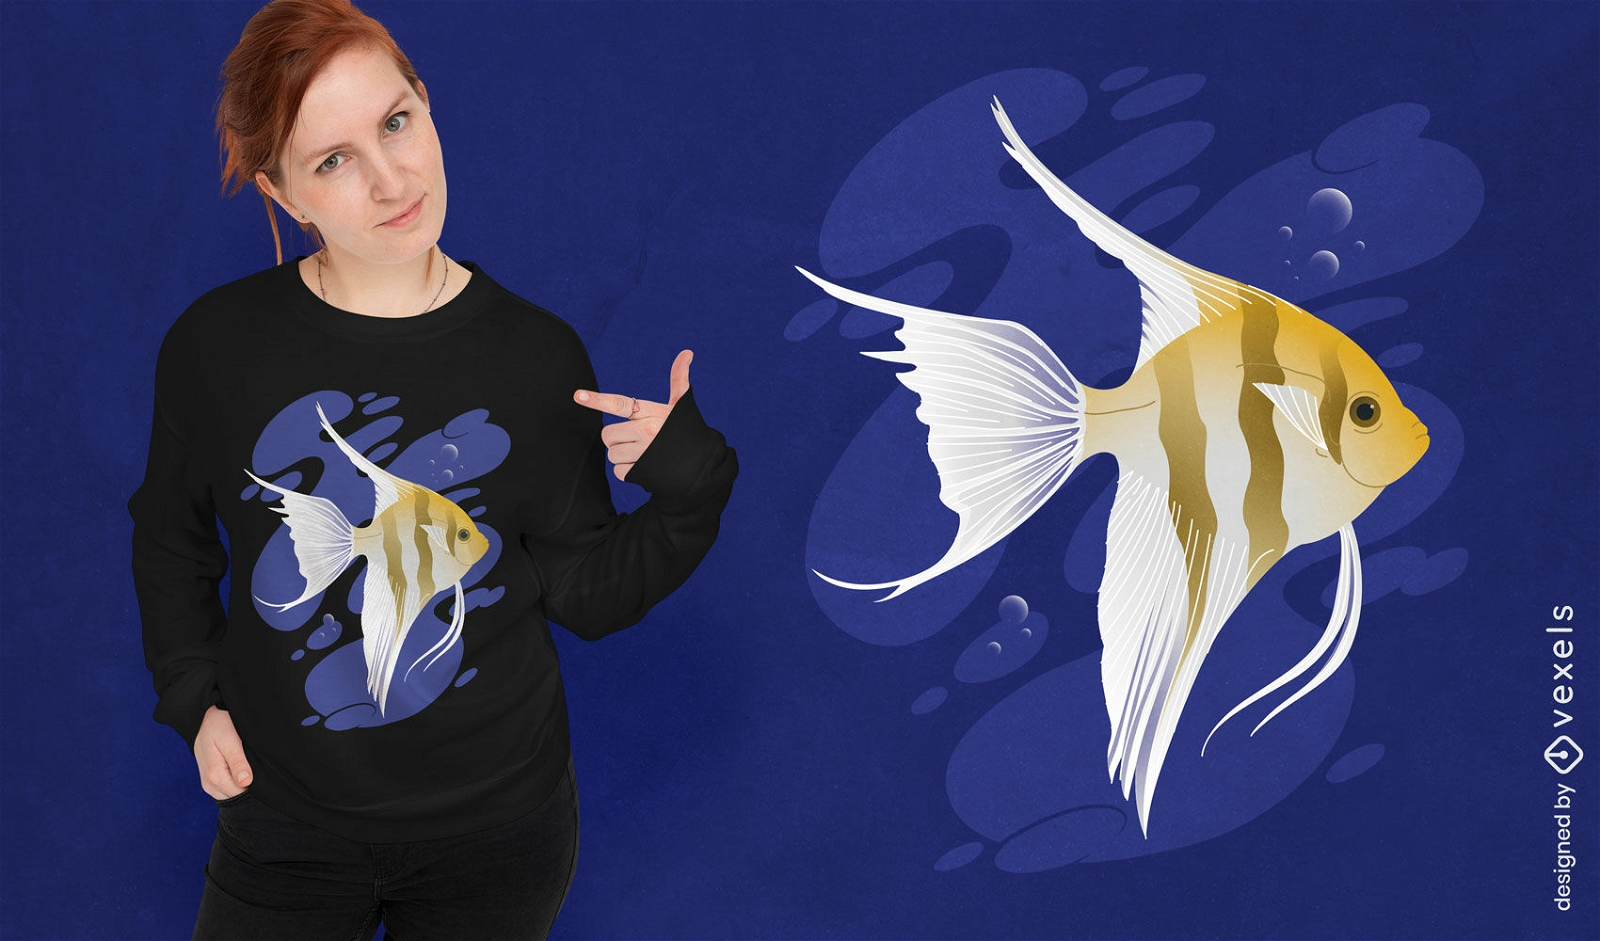 Angel Fish Tier schwimmen T-Shirt Design